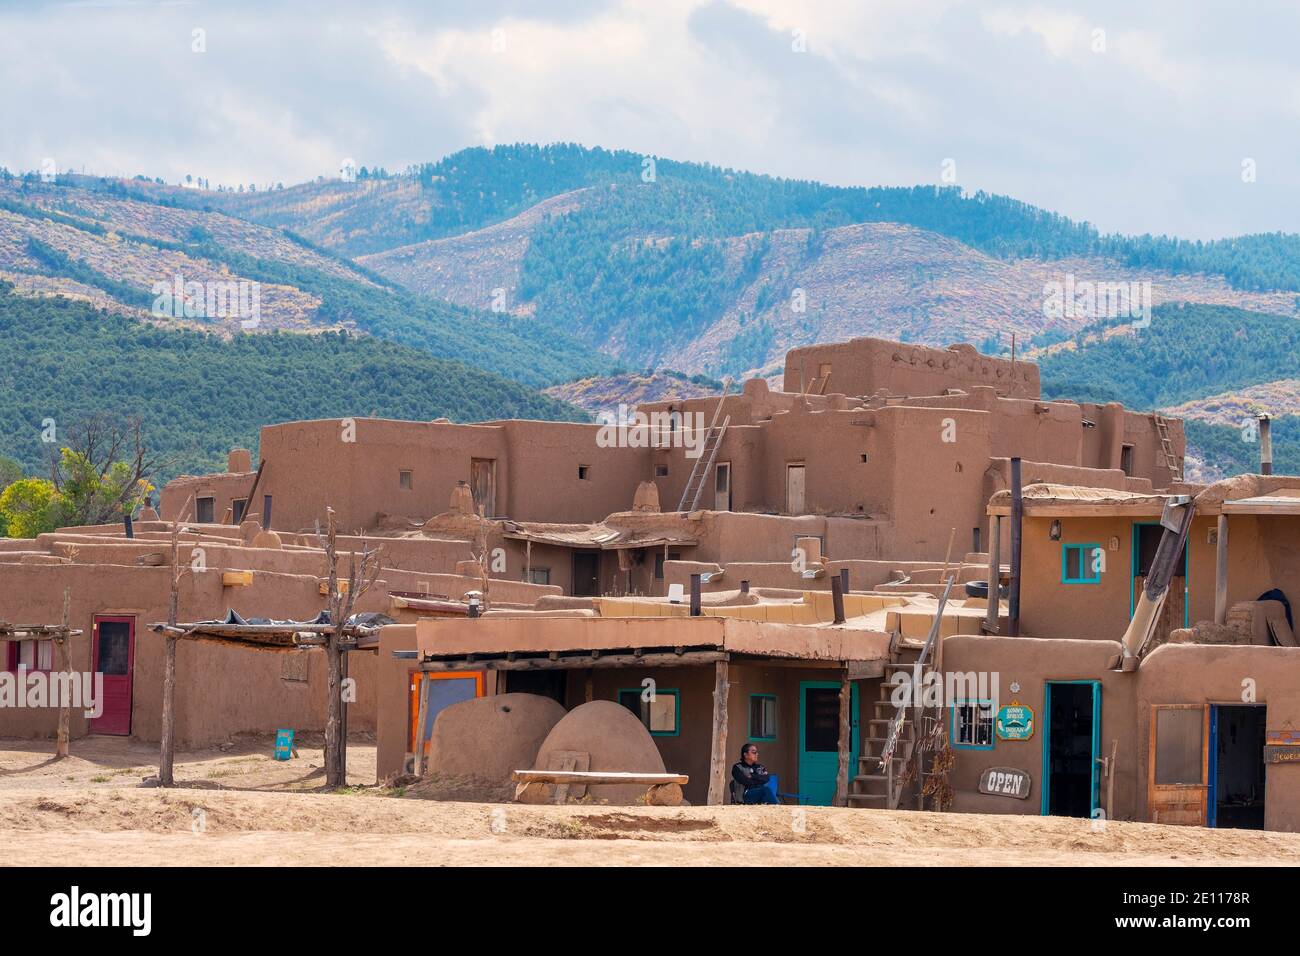 Le village historique d'adobe amérindien de Taos Pueblo et les montagnes de Taos, Nouveau-Mexique, Etats-Unis. Un site classé au patrimoine mondial de l'UNESCO. Banque D'Images